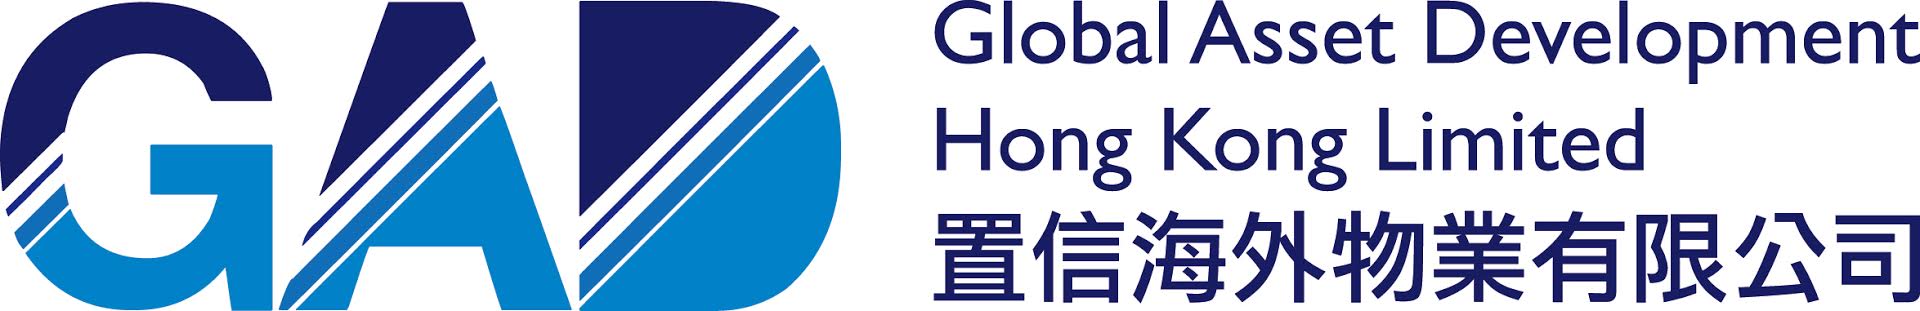 Global Asset Development Hong Kong